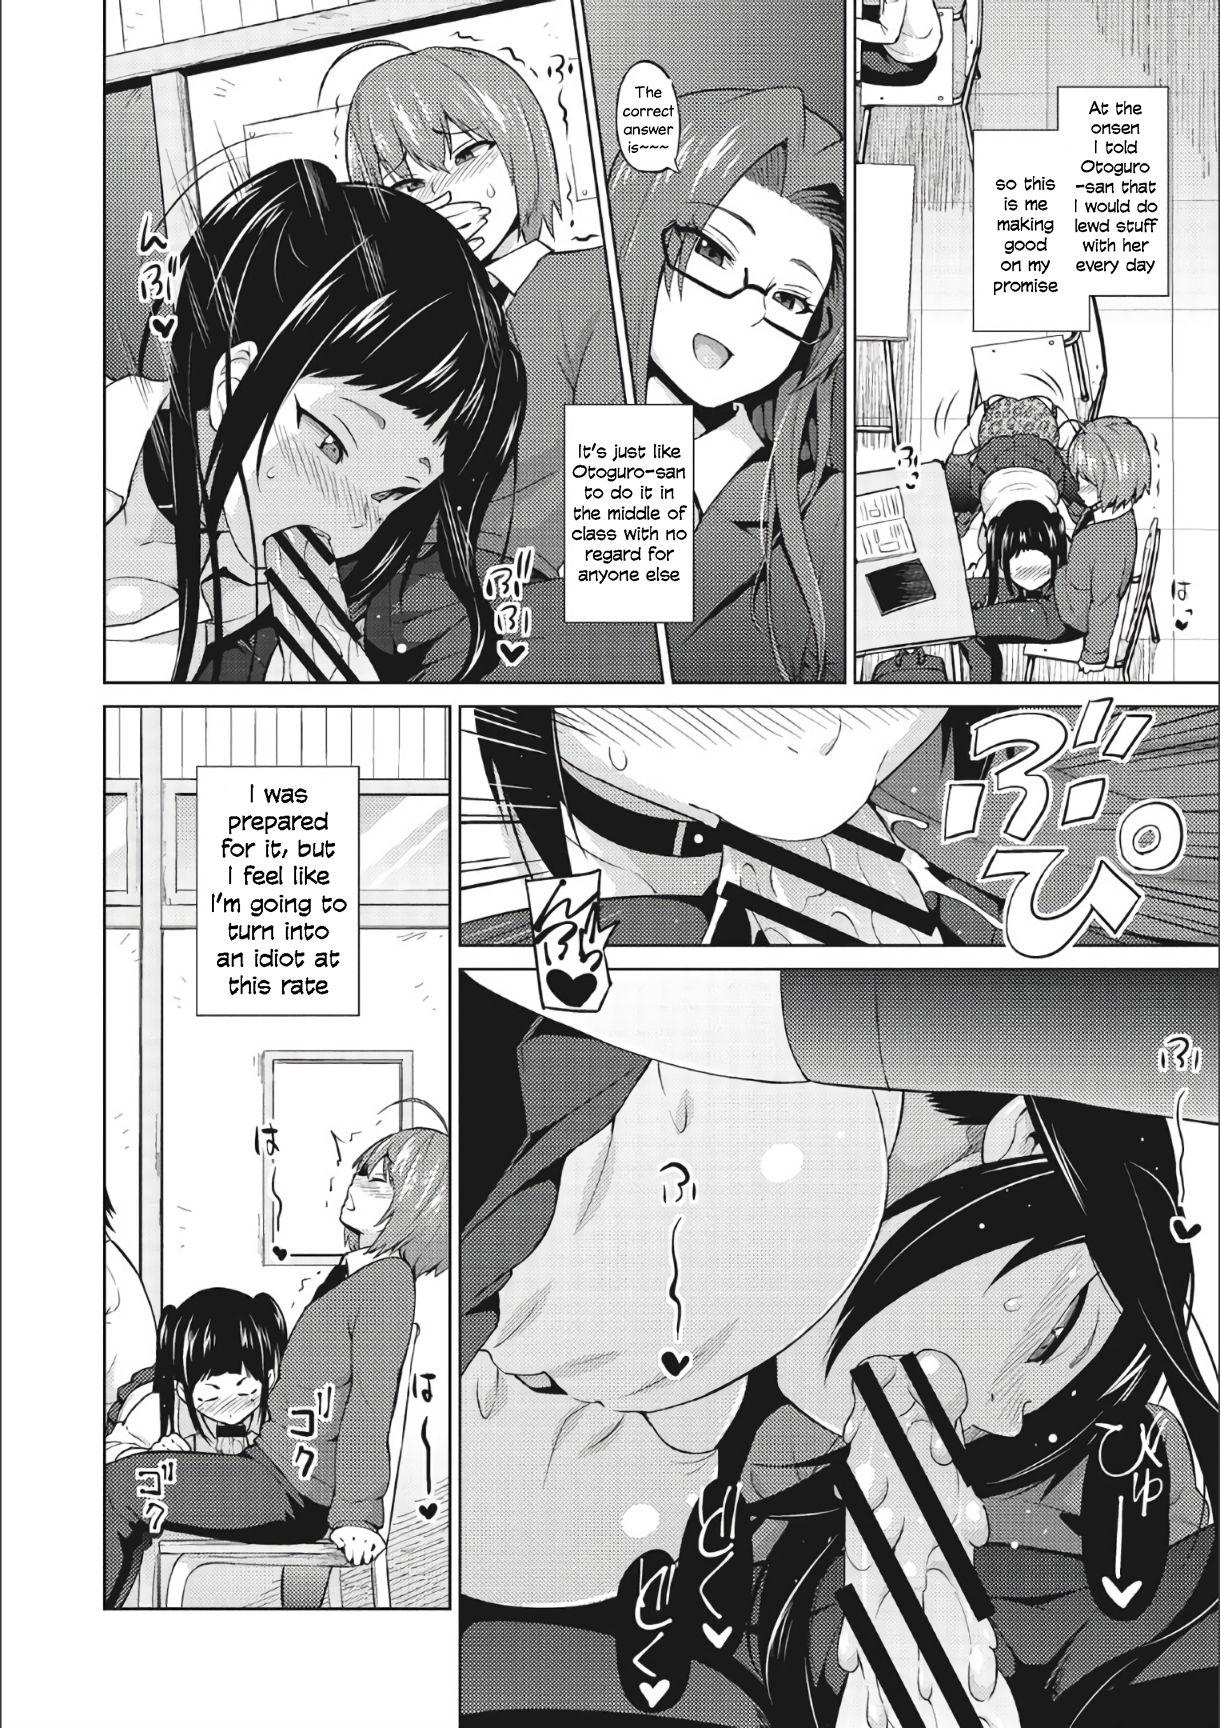 Awesome Otoguro Miya no Oasobi #3 Groupsex - Page 2